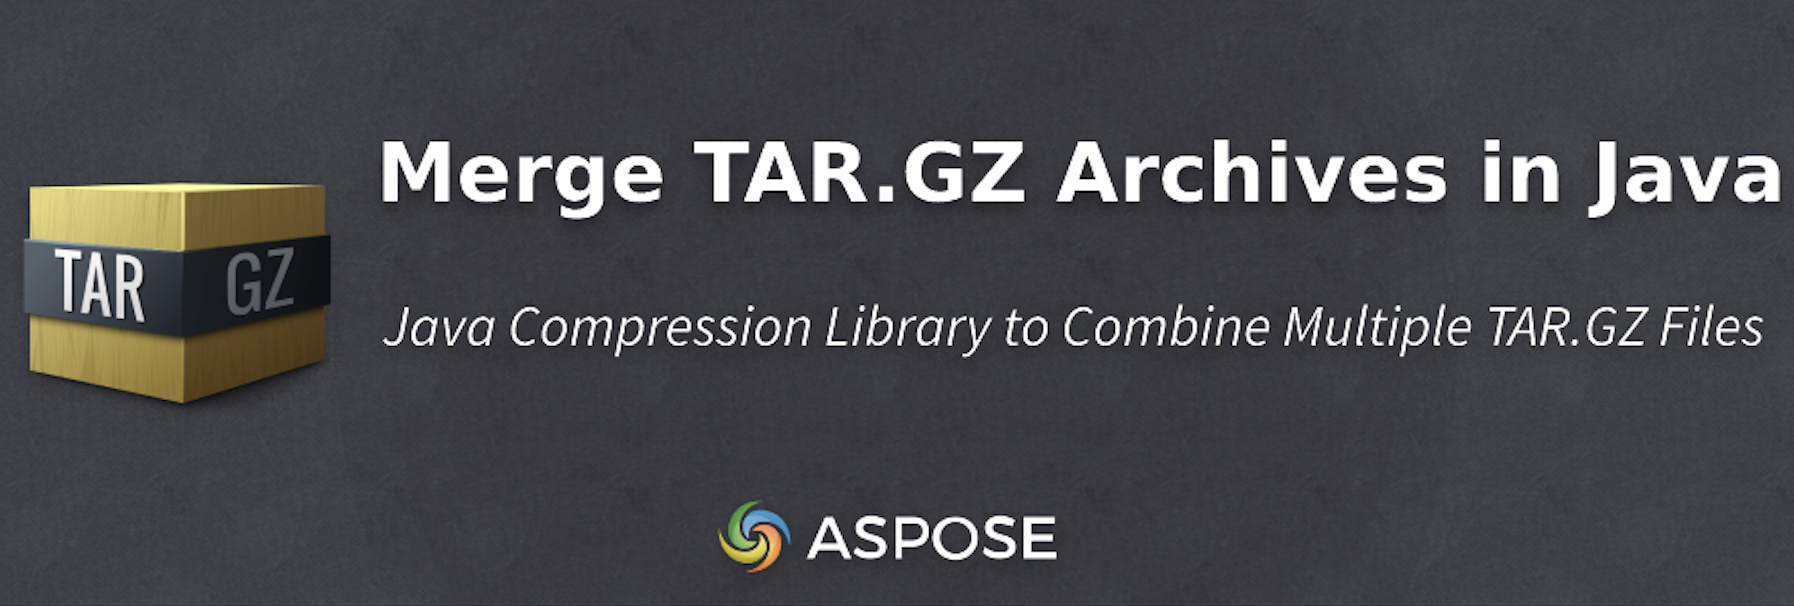 دمج أرشيفات TAR.GZ في Java برمجياً